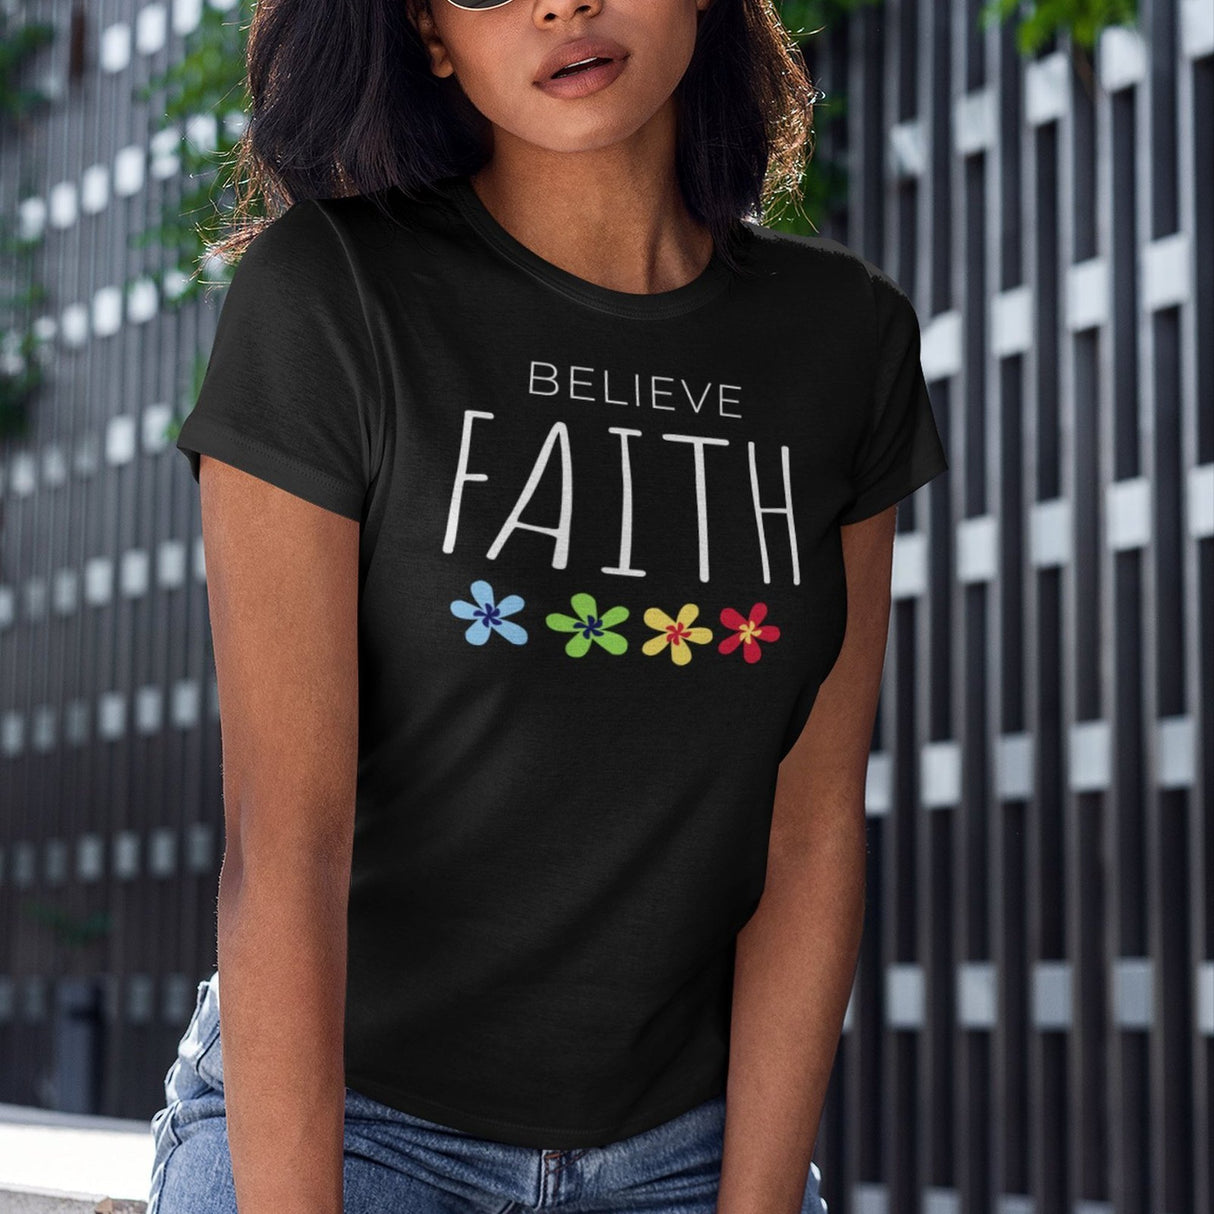 believe-faith-faith-tee-believe-t-shirt-christian-tee-jesus-t-shirt-religious-tee#color_black